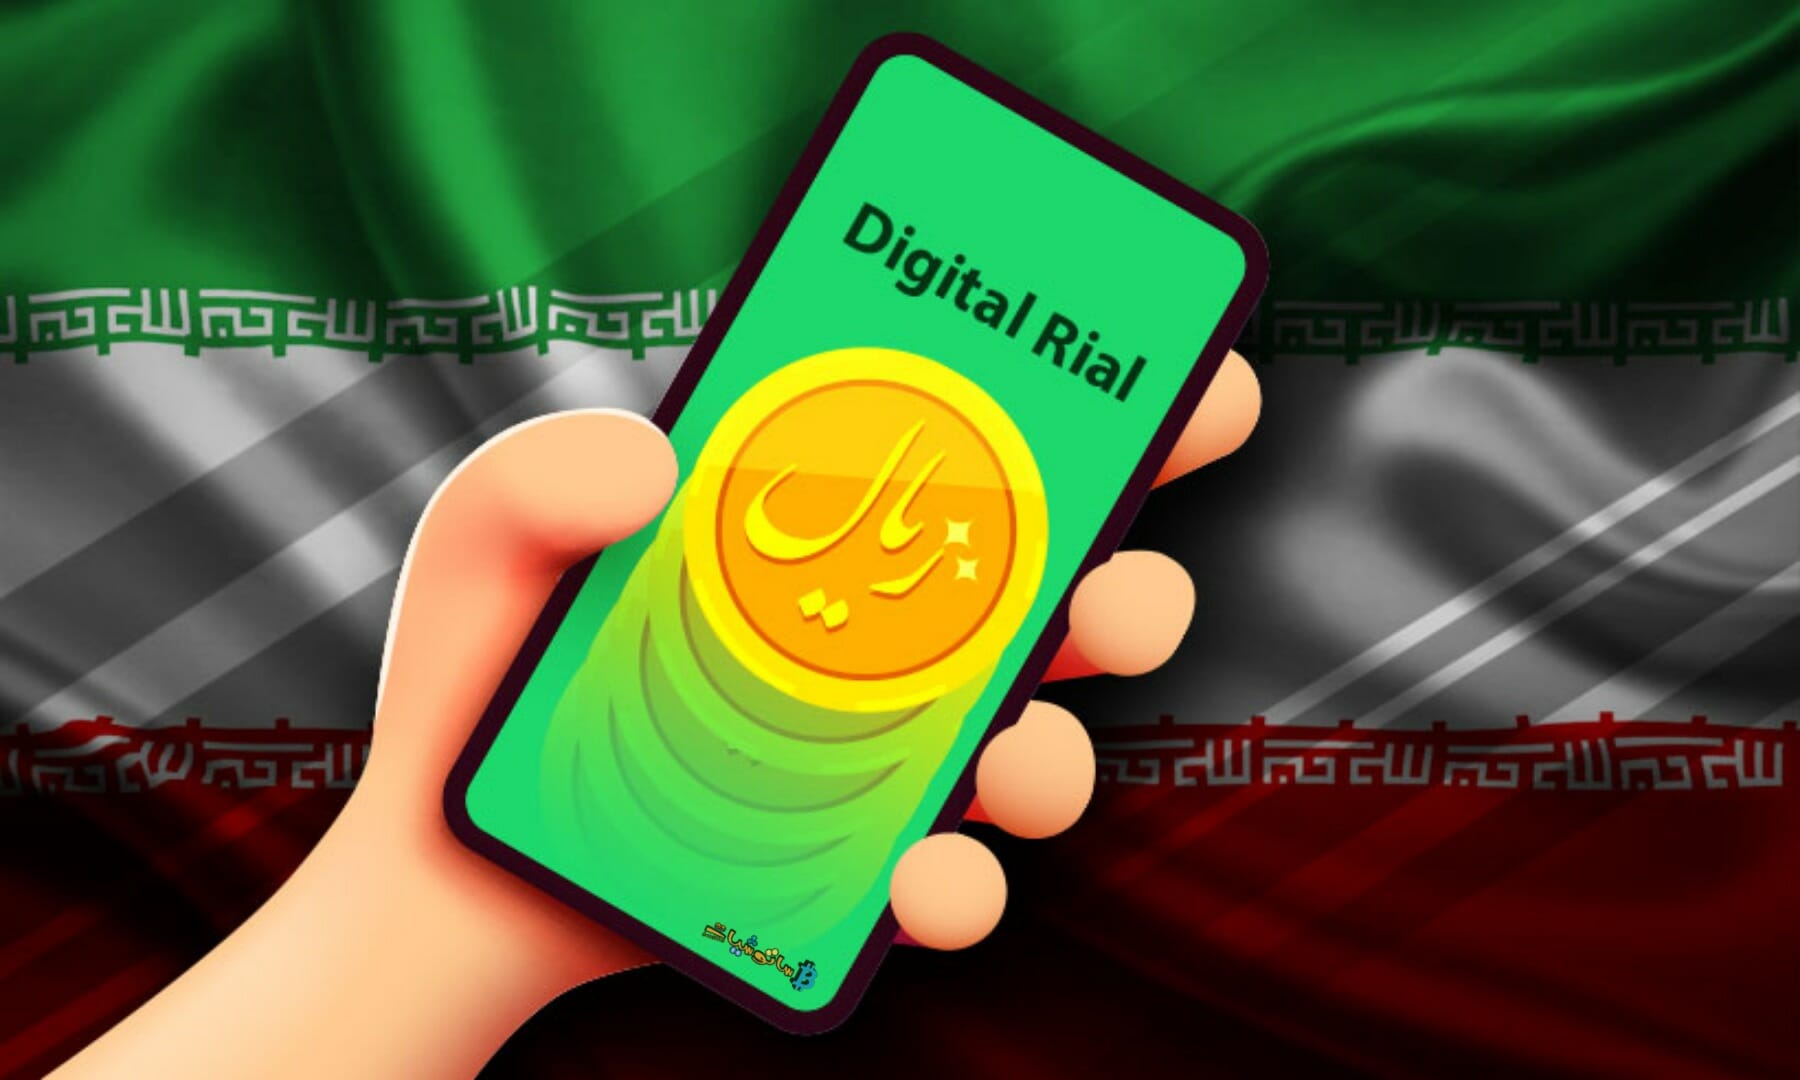 إيران ستطلق تجريبياً عملة الريال الرقمية "CBDC" التابعة للبنك المركزي